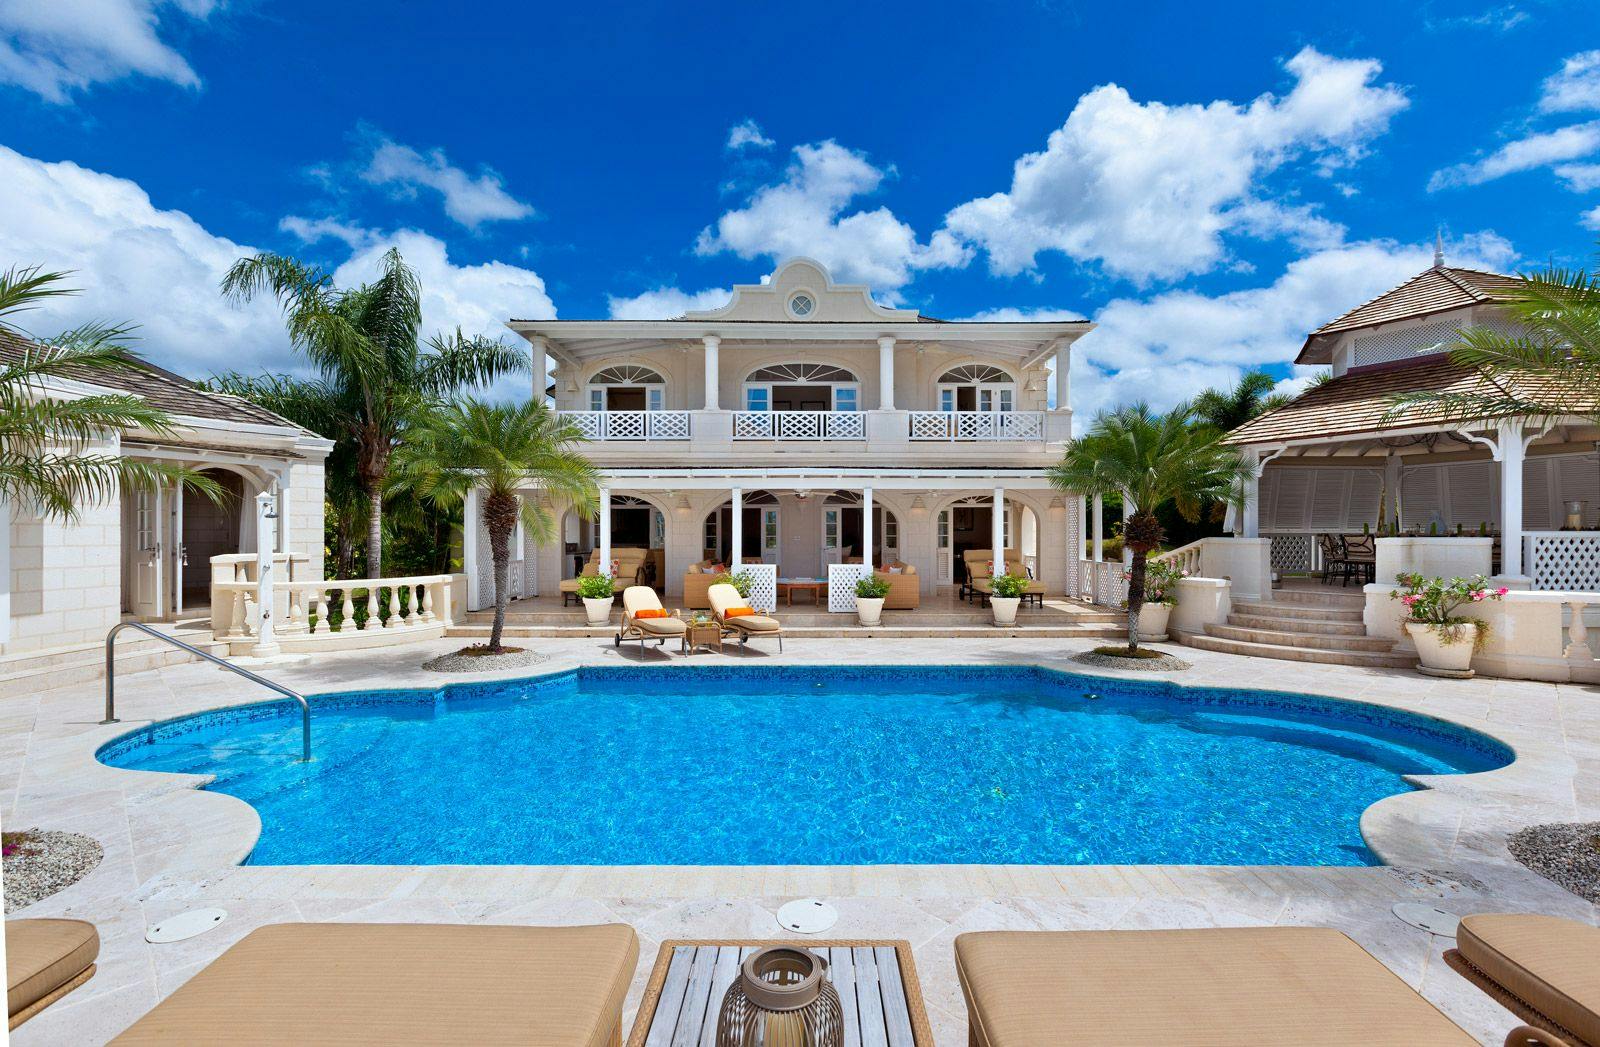 Half Century House - Sugar Hill Barbados villa rental with private pool